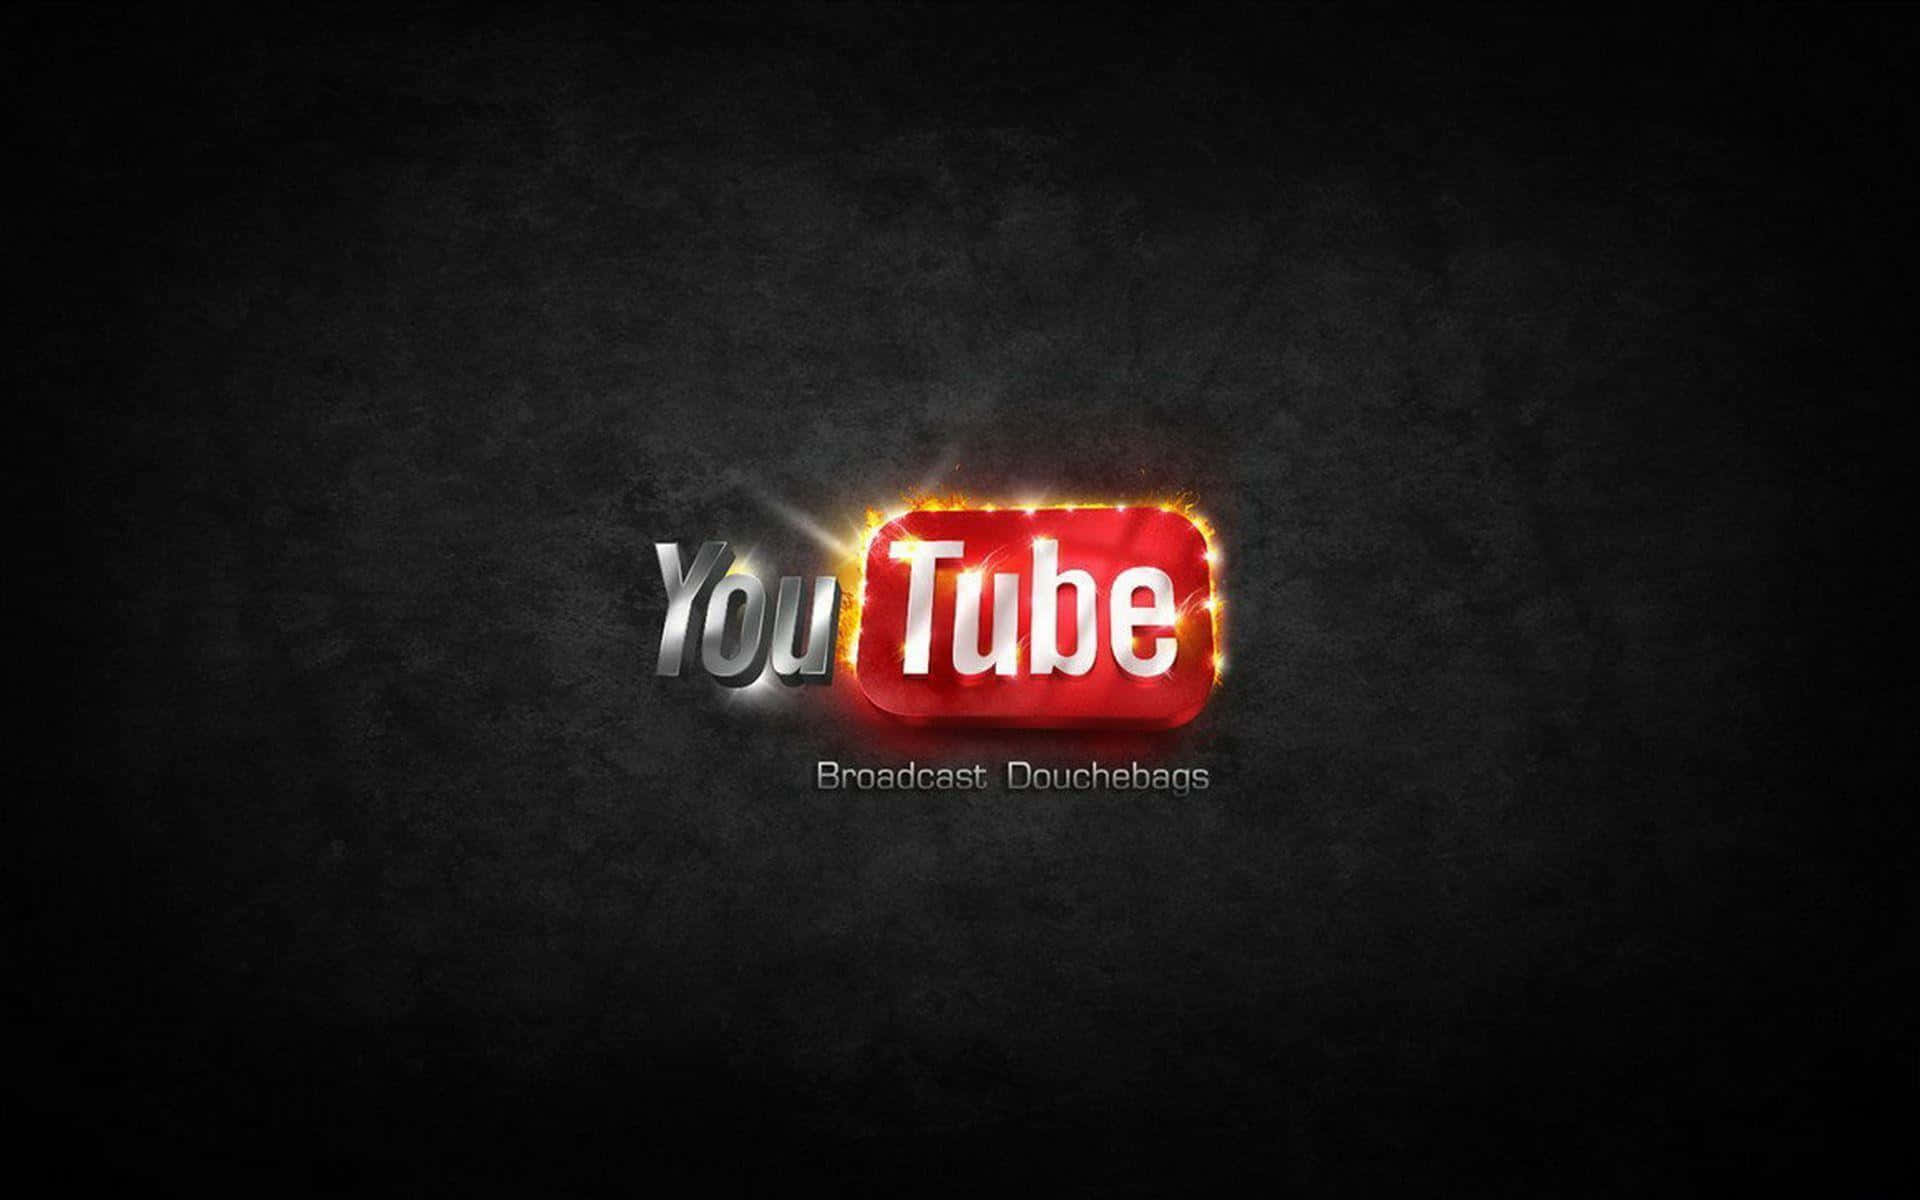 Impresionantefondo De Pantalla Personalizado Para El Logotipo De Youtube.